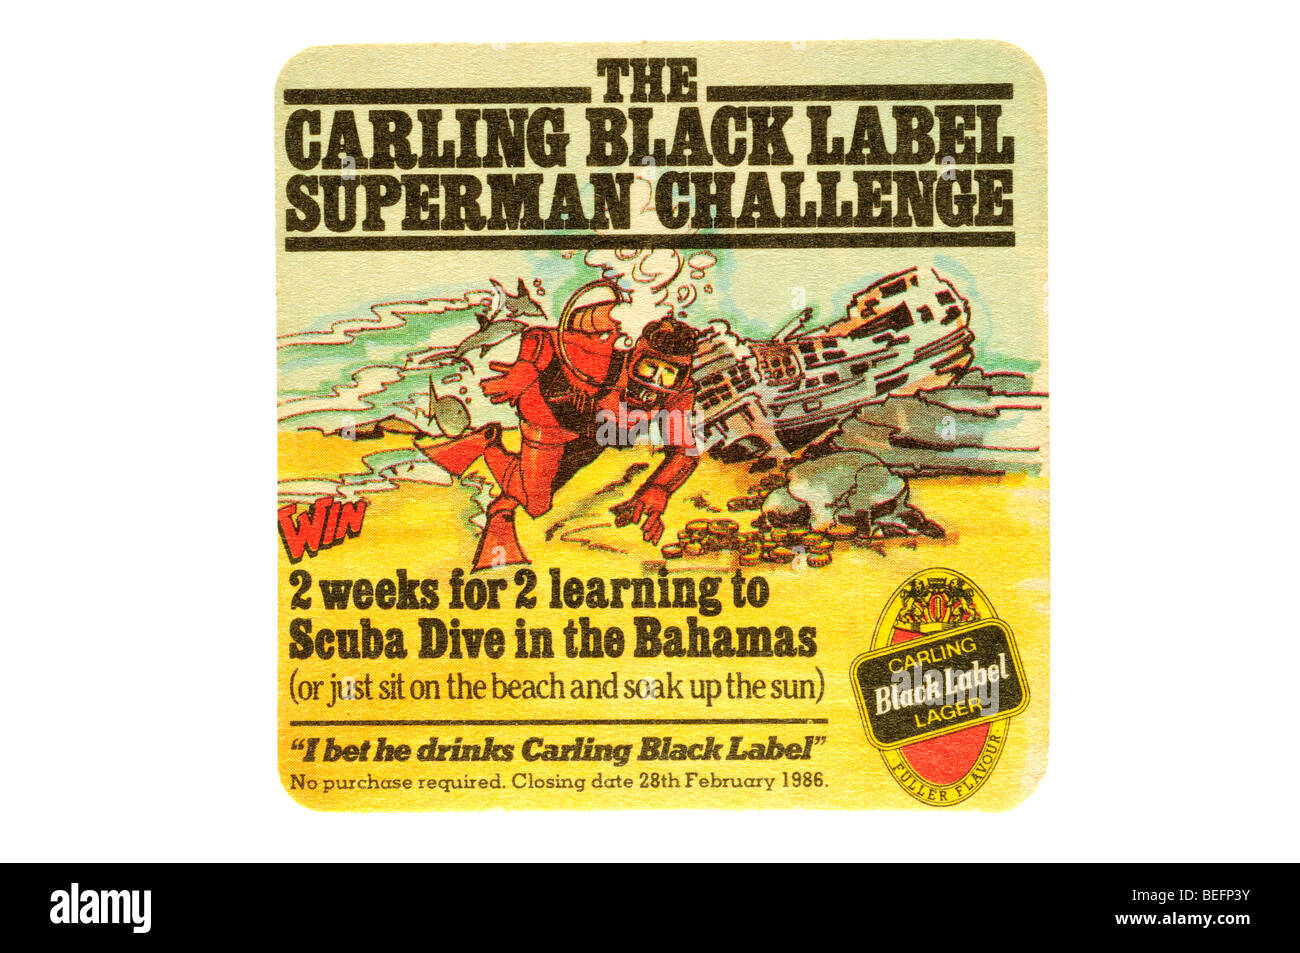 La carling black label superman défi 2 semaines 2 apprendre à plonger aux Bahamas Banque D'Images